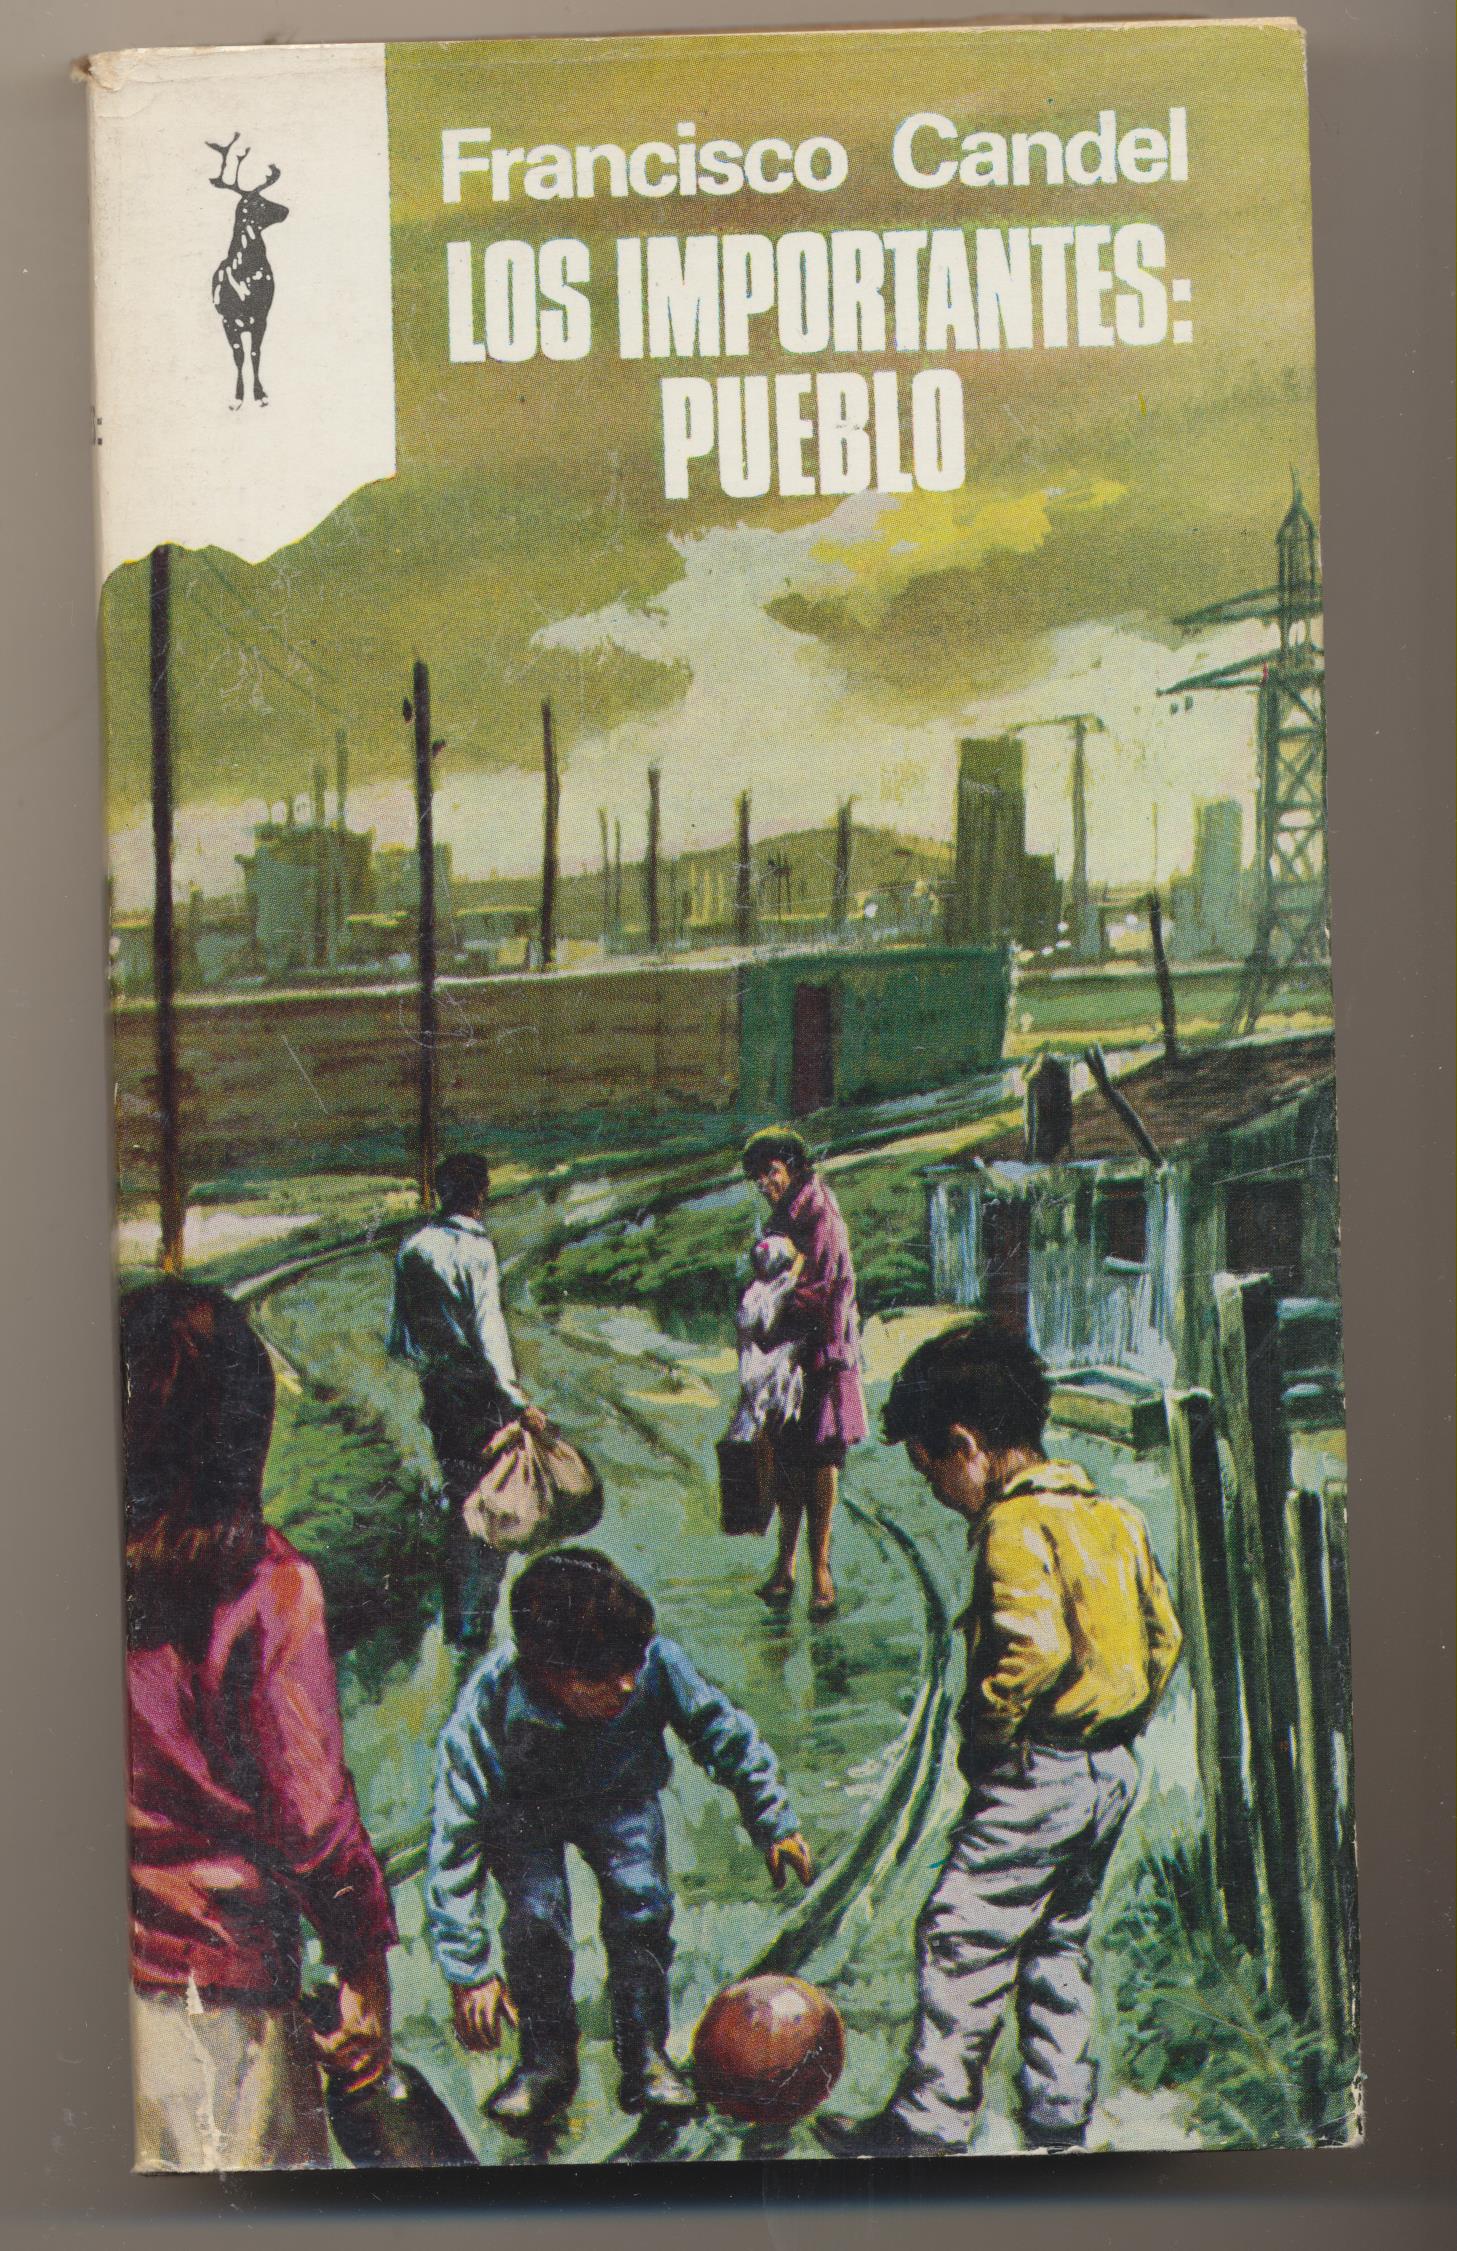 Francisco Candel. Los Importantes: Pueblo. Re4no. Plaza & Janes 1970. SIN USAR